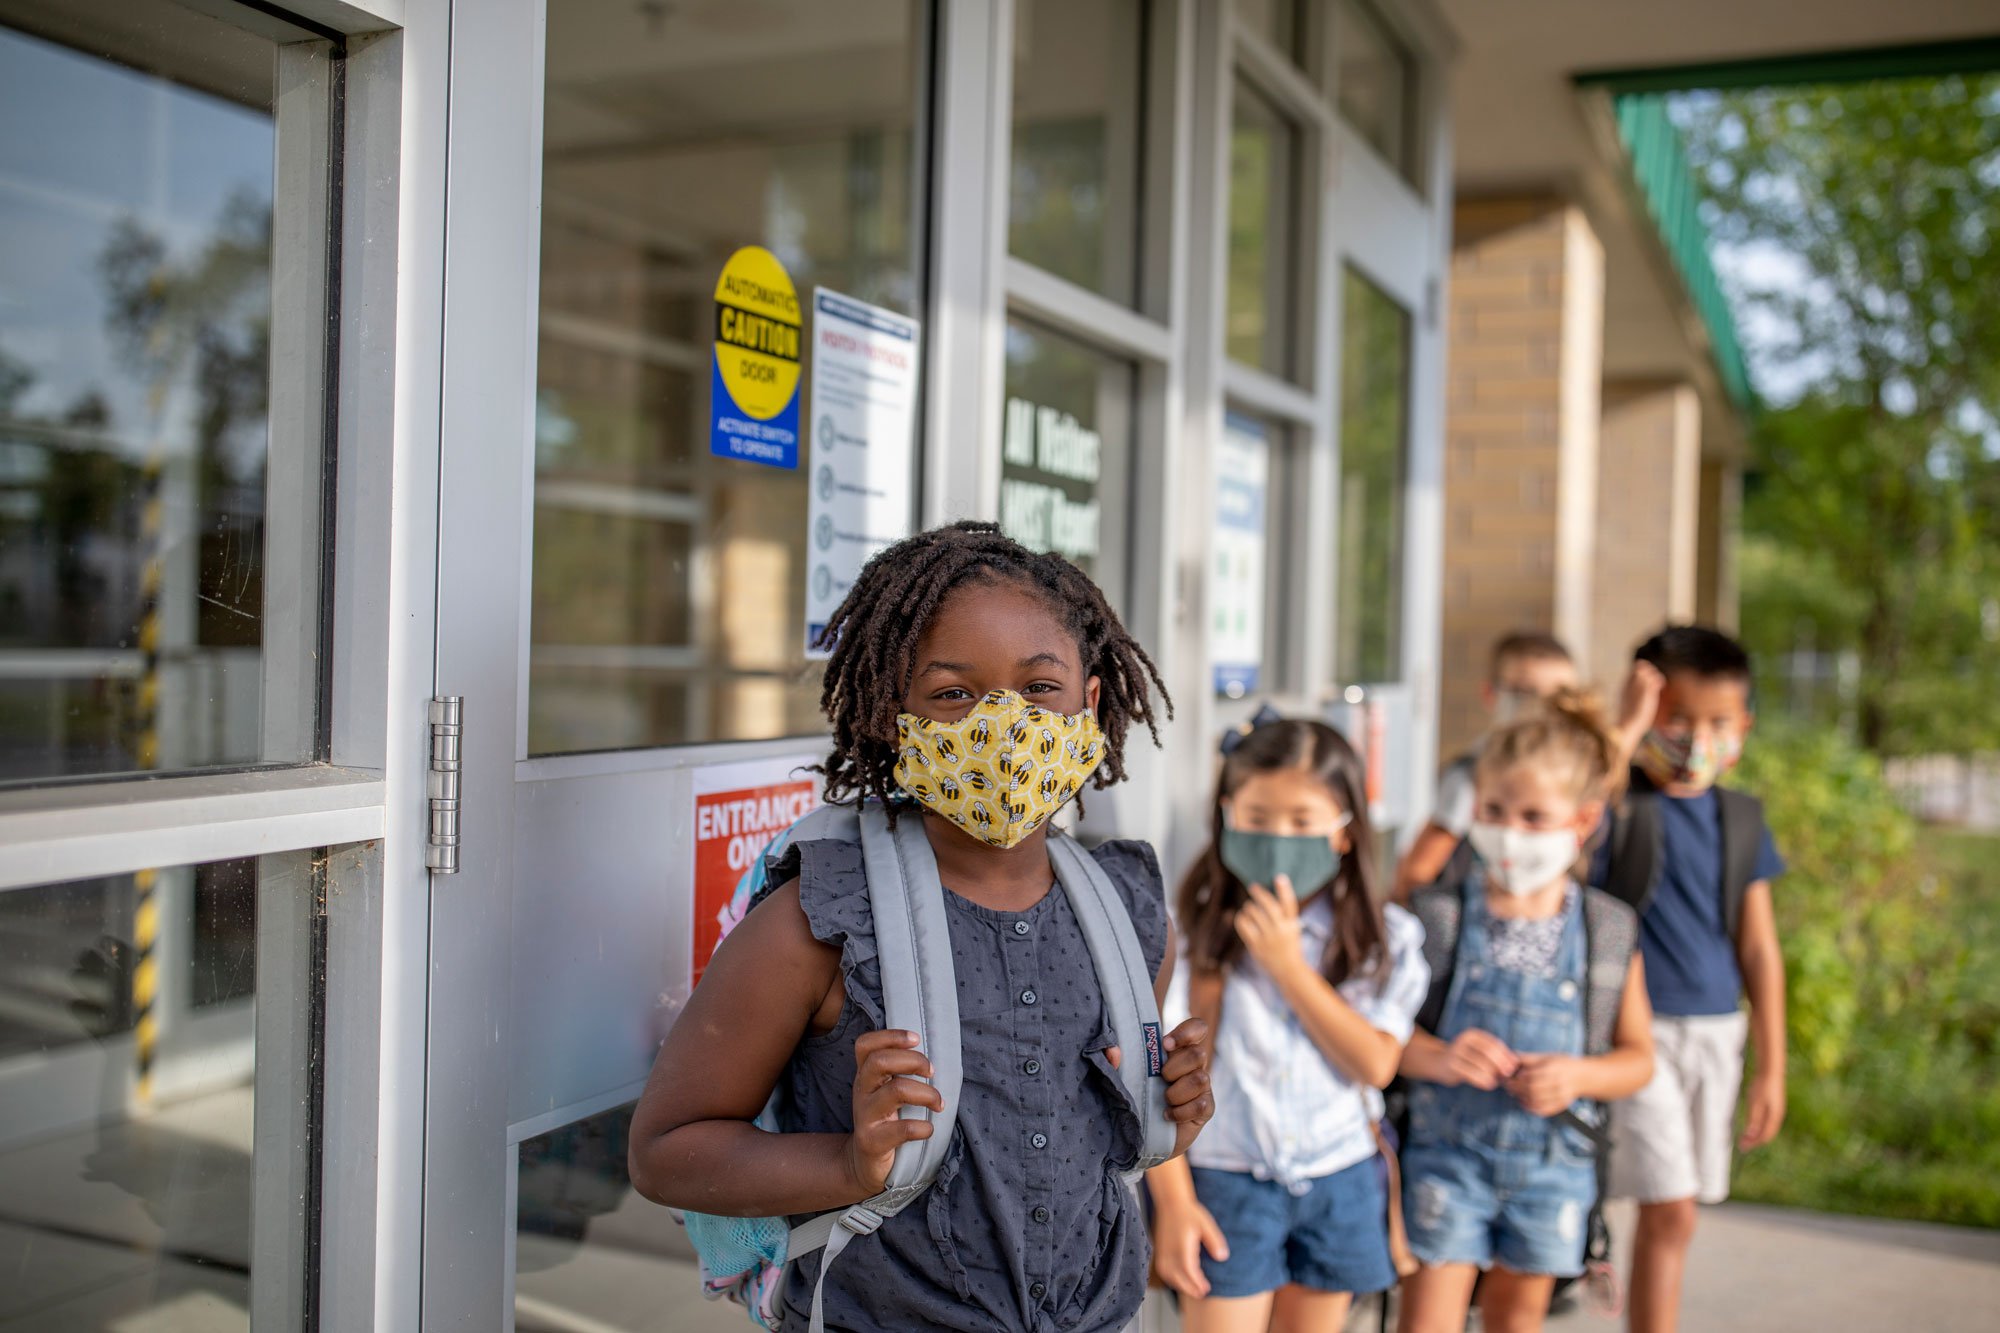 Kids lined up outside school wearing masks